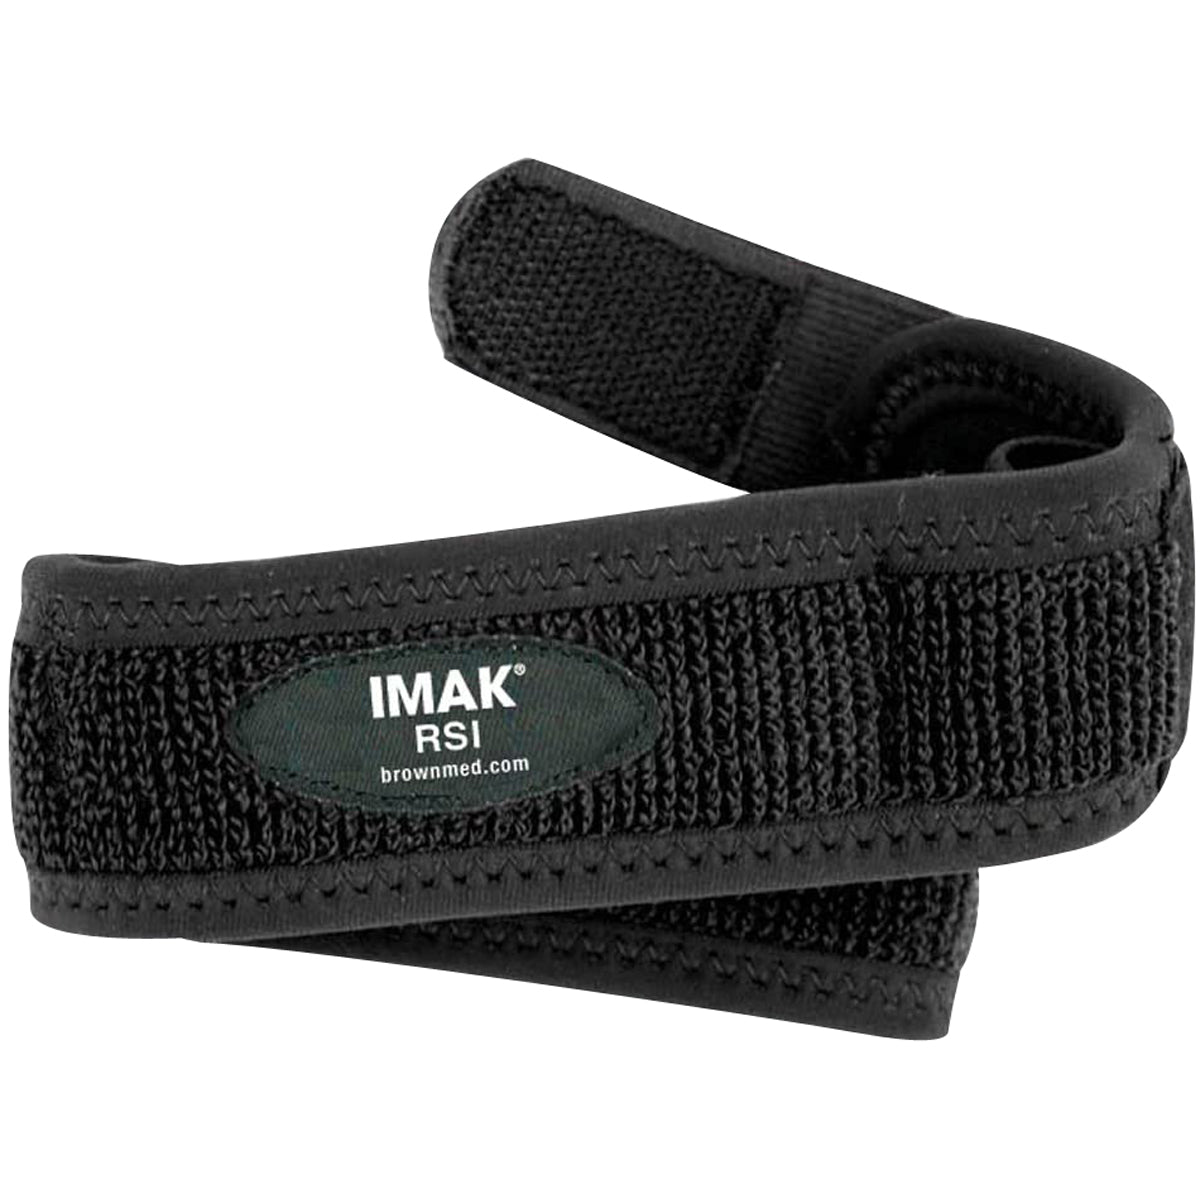 Brownmed IMAK RSI Knee Strap - Universal - Black IMAK